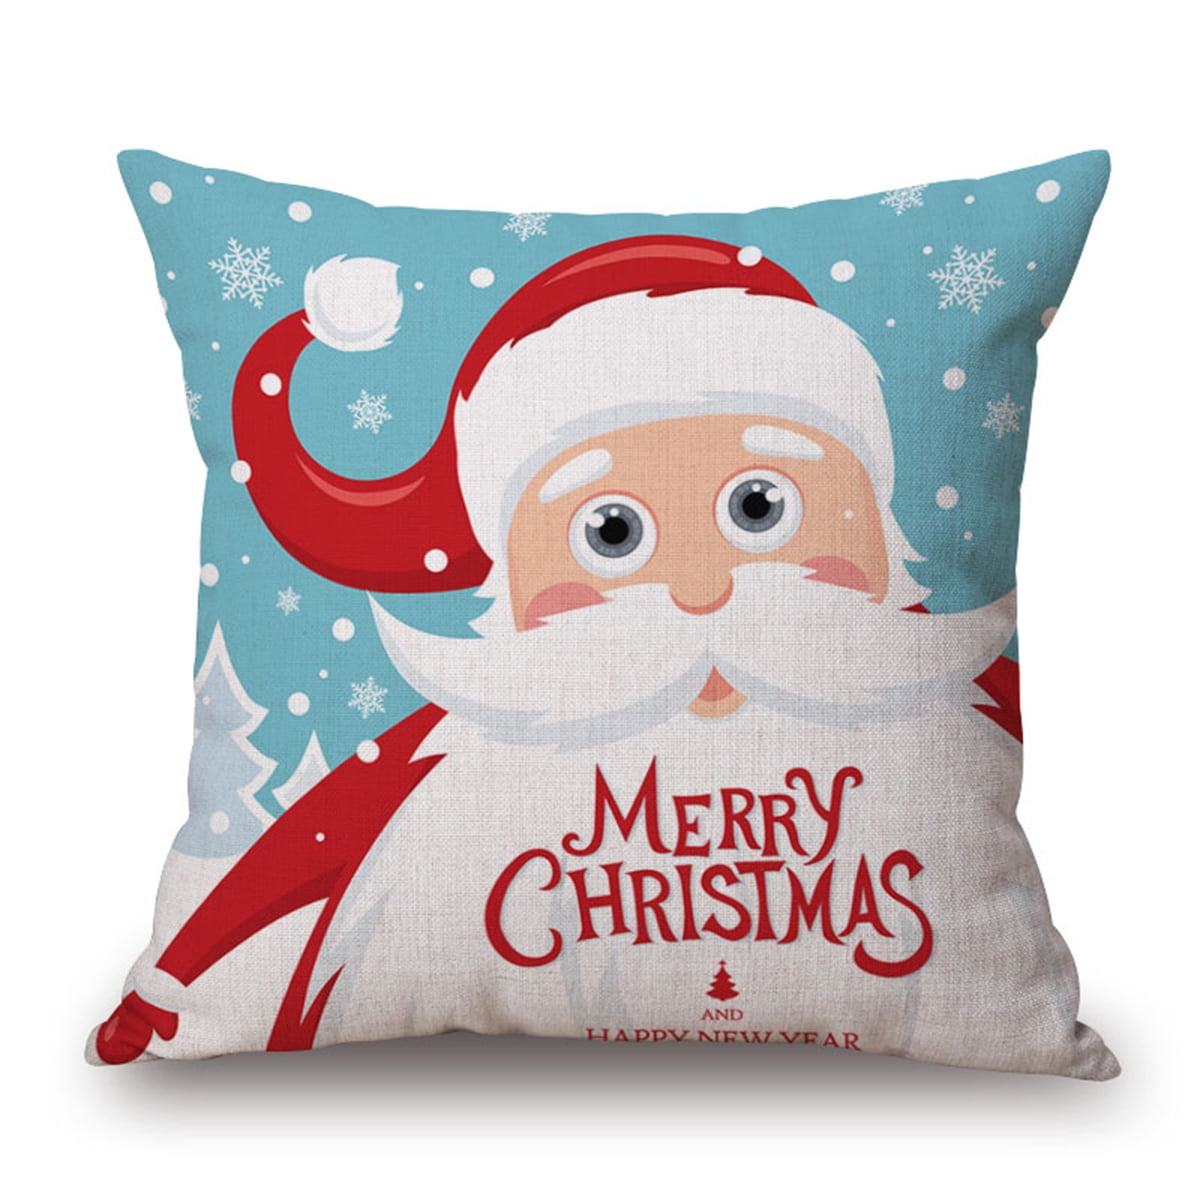 Linen Festive Christmas Throw Home Case Decor Cover Gift Cushion Pillow Xmas